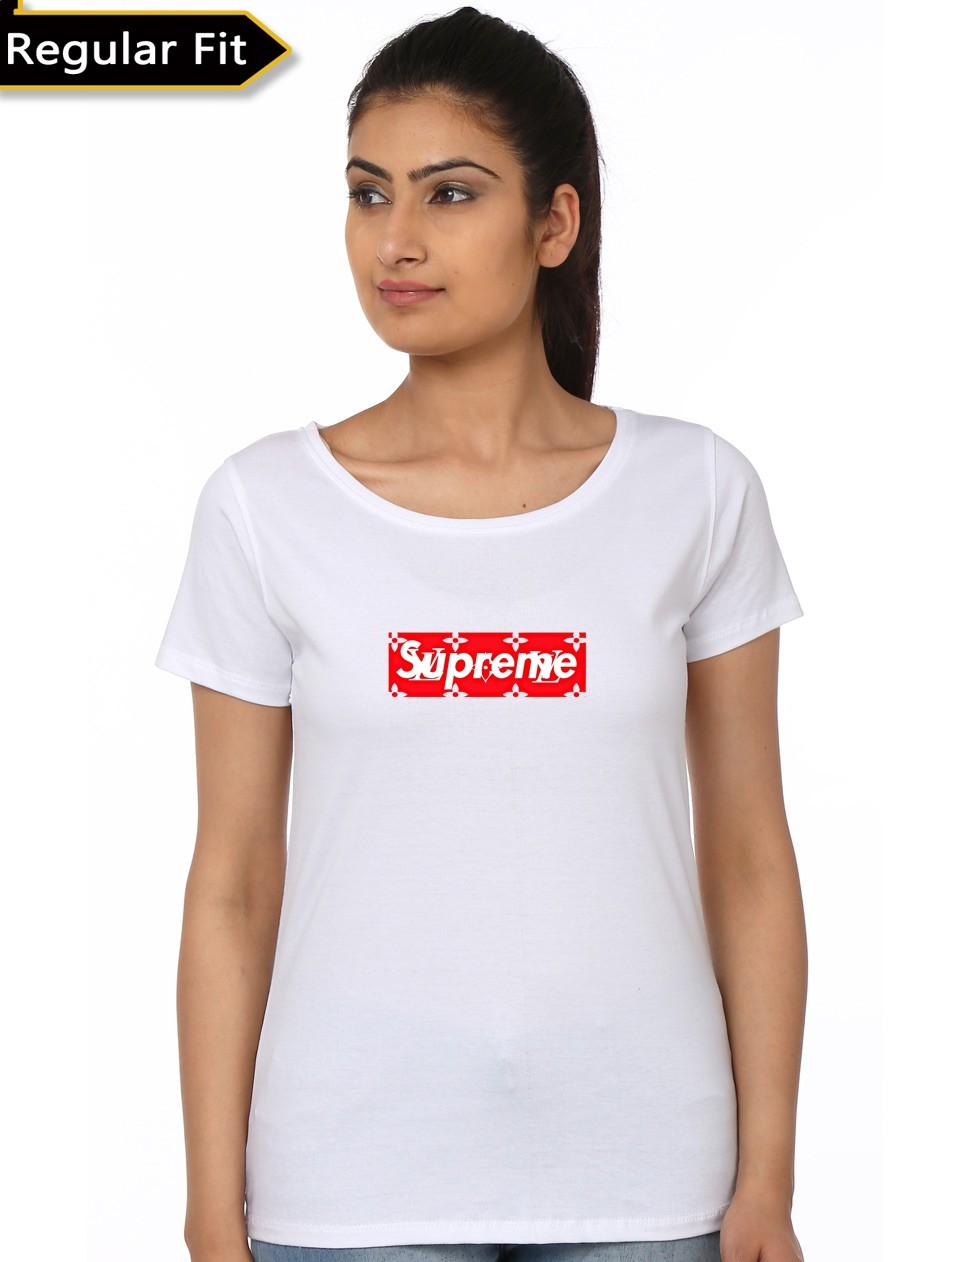 supreme lv shirt